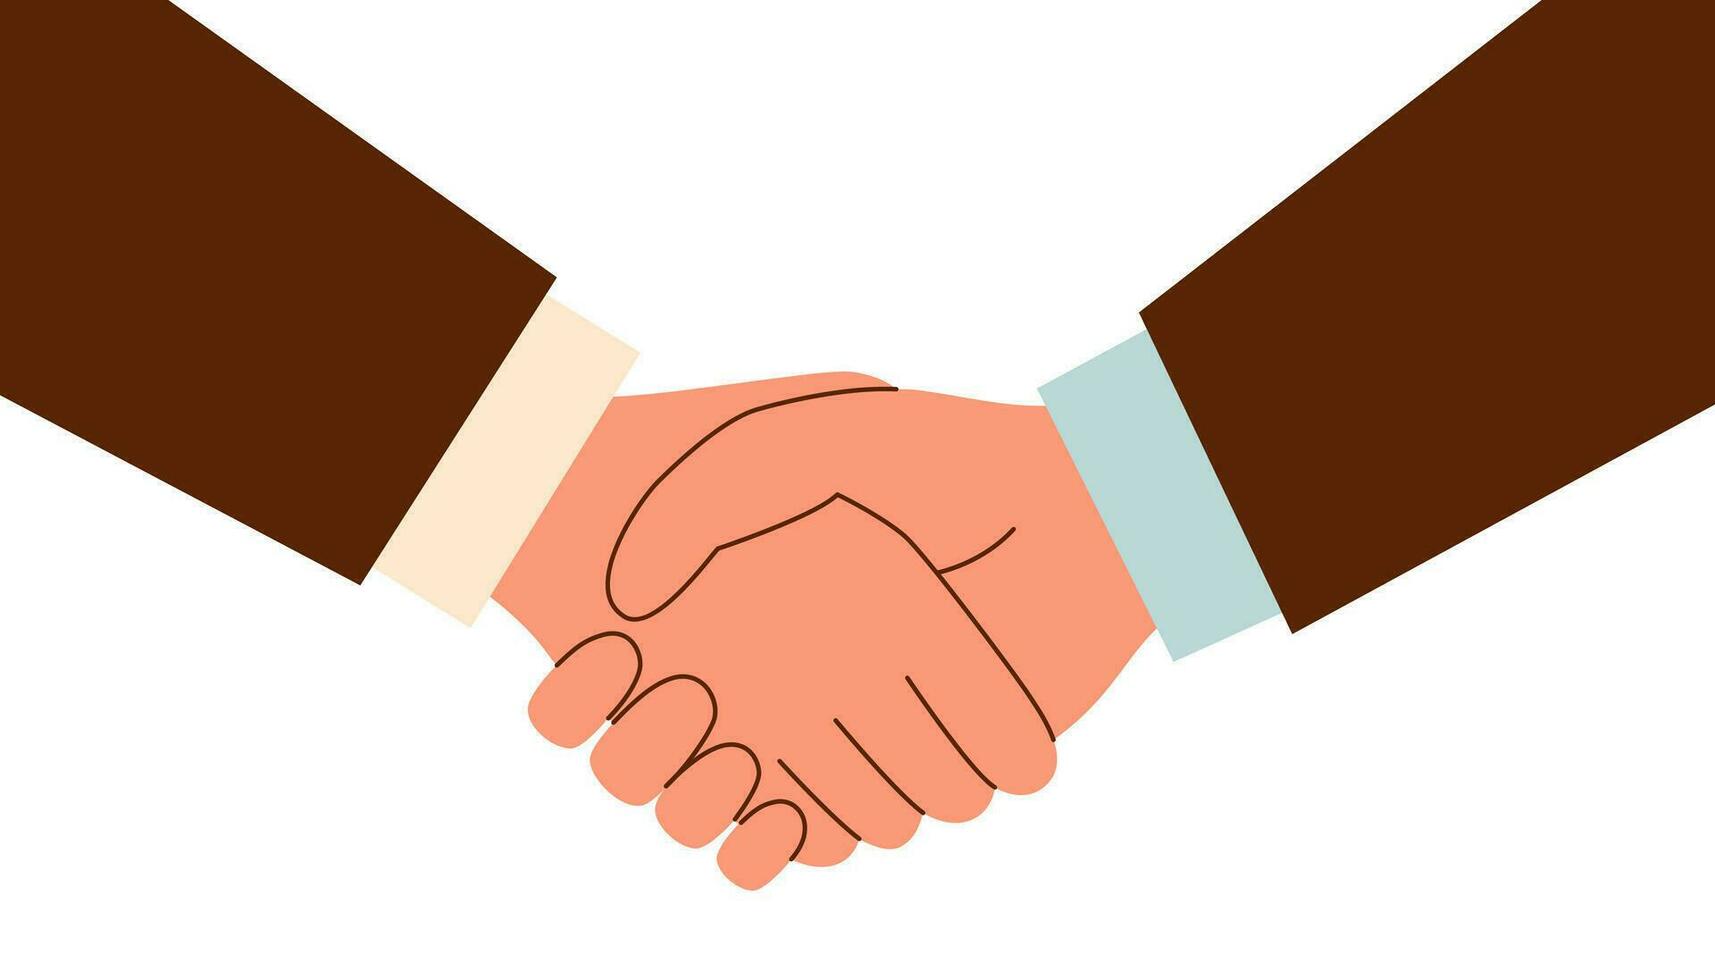 Handshake between businessmen vector